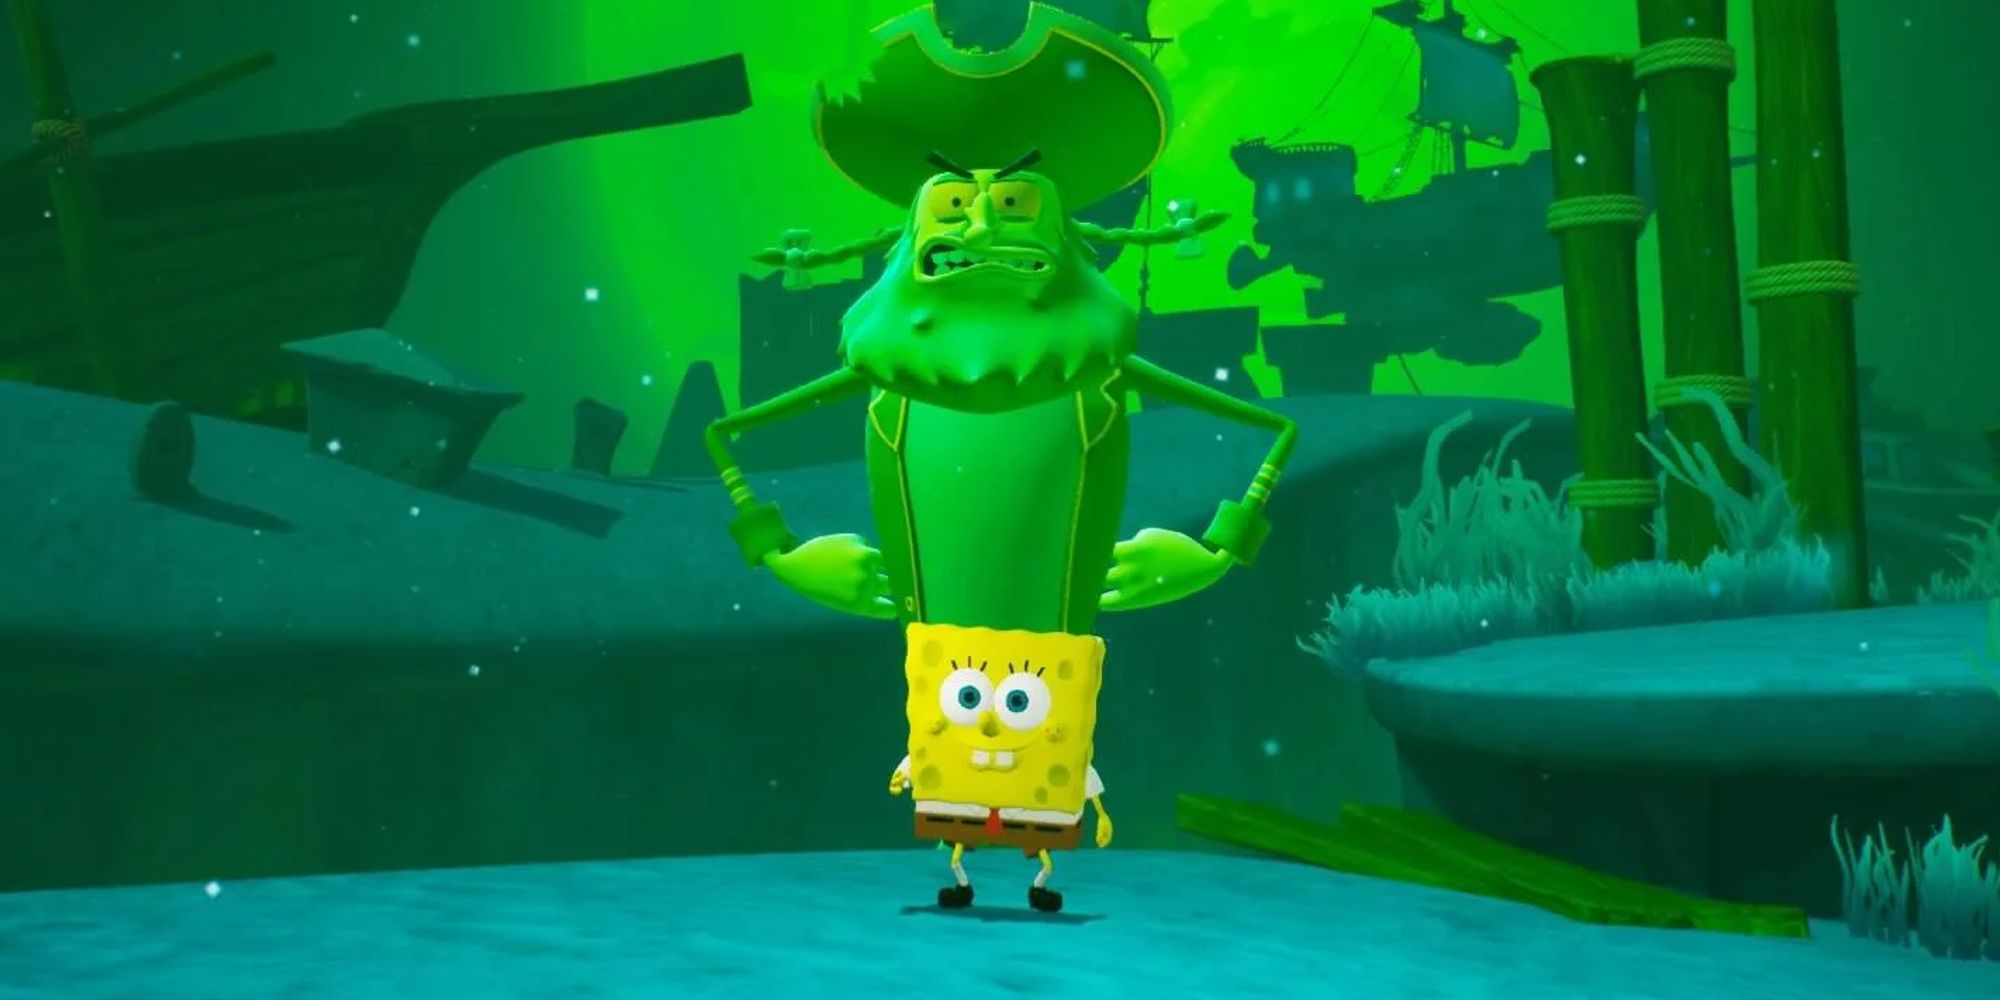 การต่อสู้ของ Spongebob เพื่อบิกินี่ท่อนล่างทำให้ Flying Dutchman ยืนอยู่ข้างหลัง Spongebob